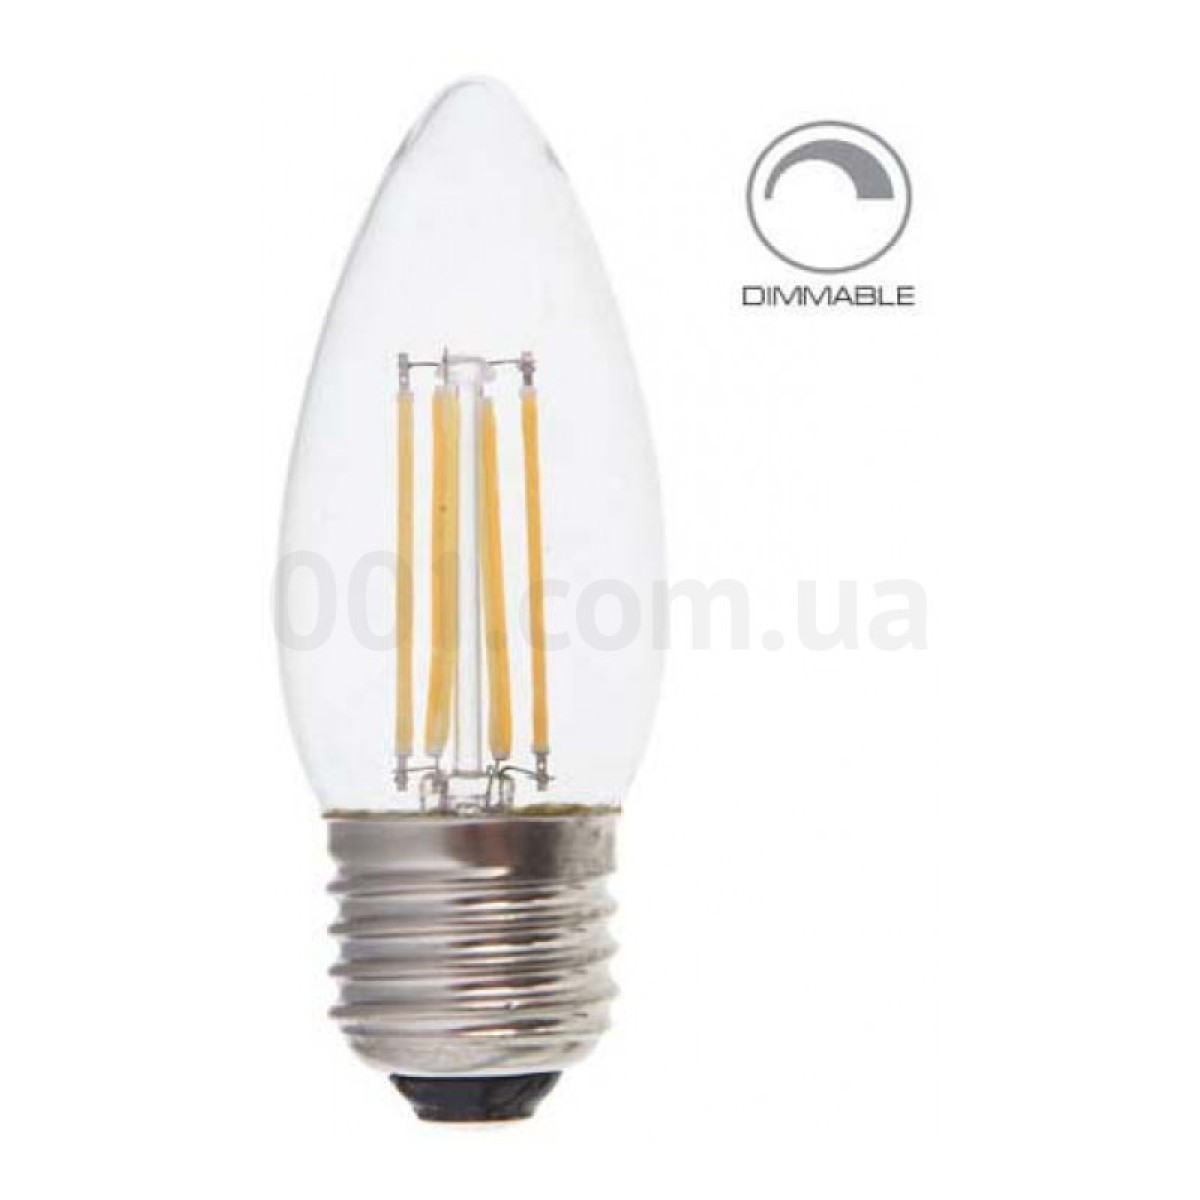 Світлодіодна лампа LB-68 DIMM C37 (свічка) філамент 4Вт 4000K E27, Feron 98_98.jpg